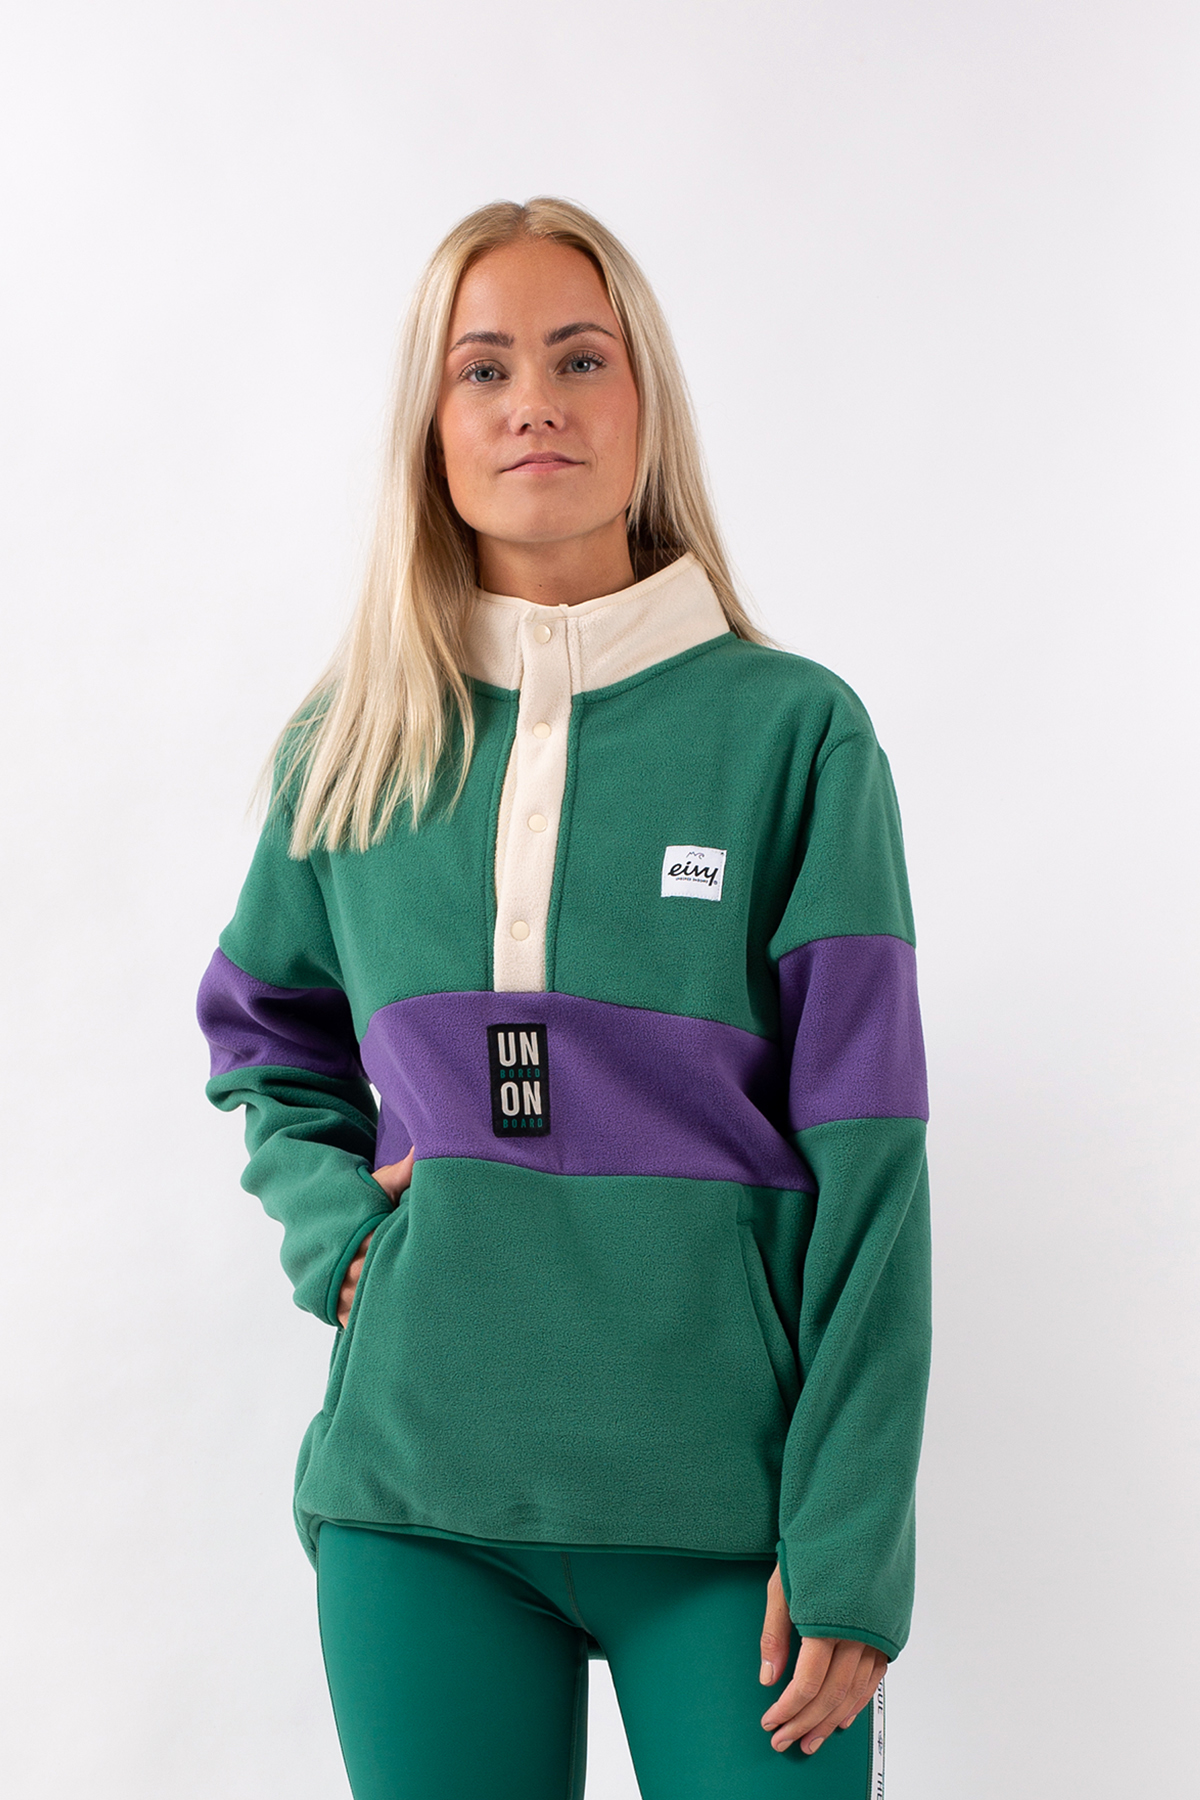 Fleece | Mountain Fleece - Green & Purple | L